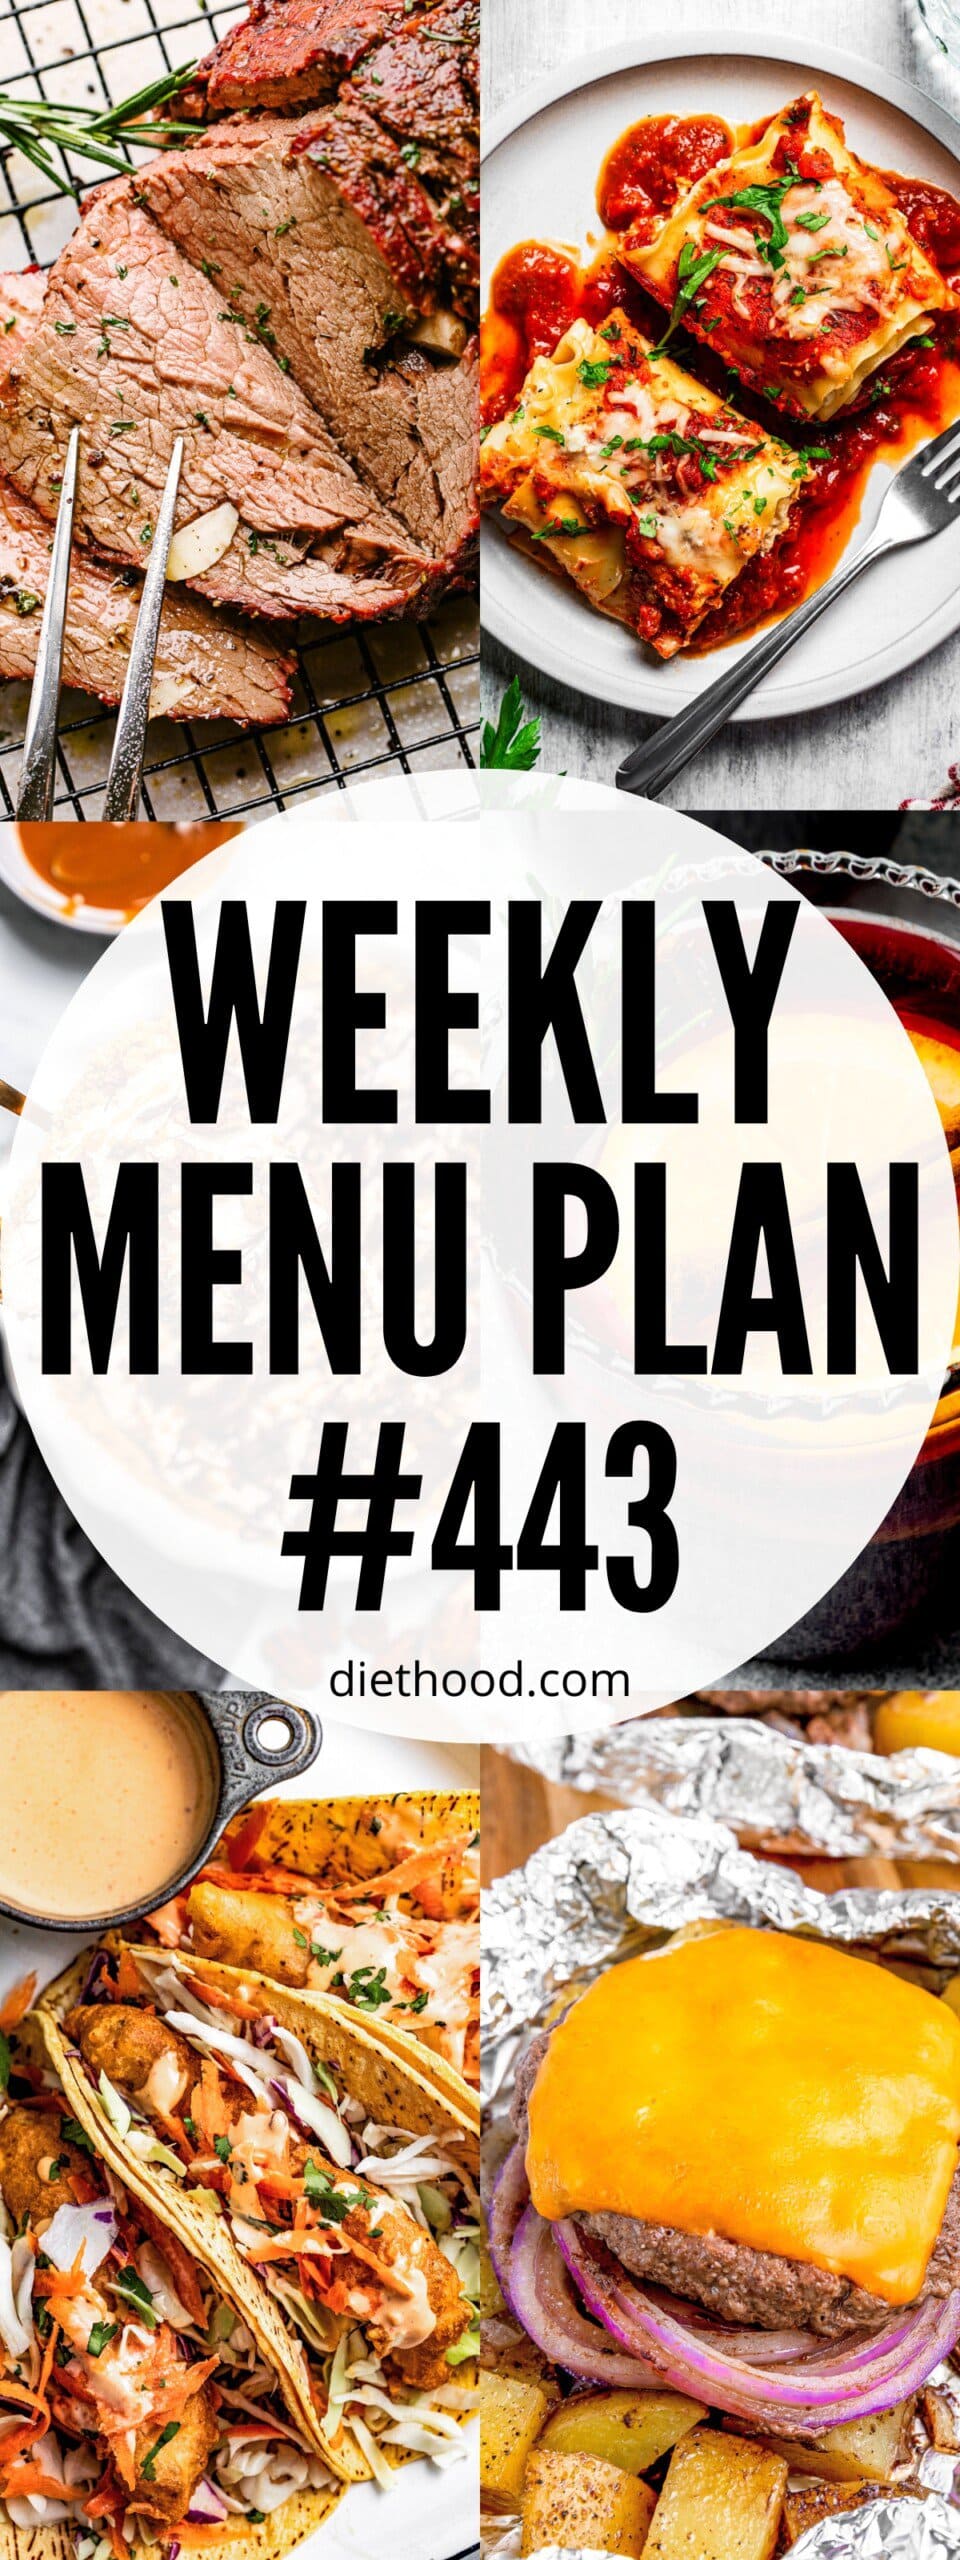 Weekly Menu Plan 443 six image collage Pinterest image.